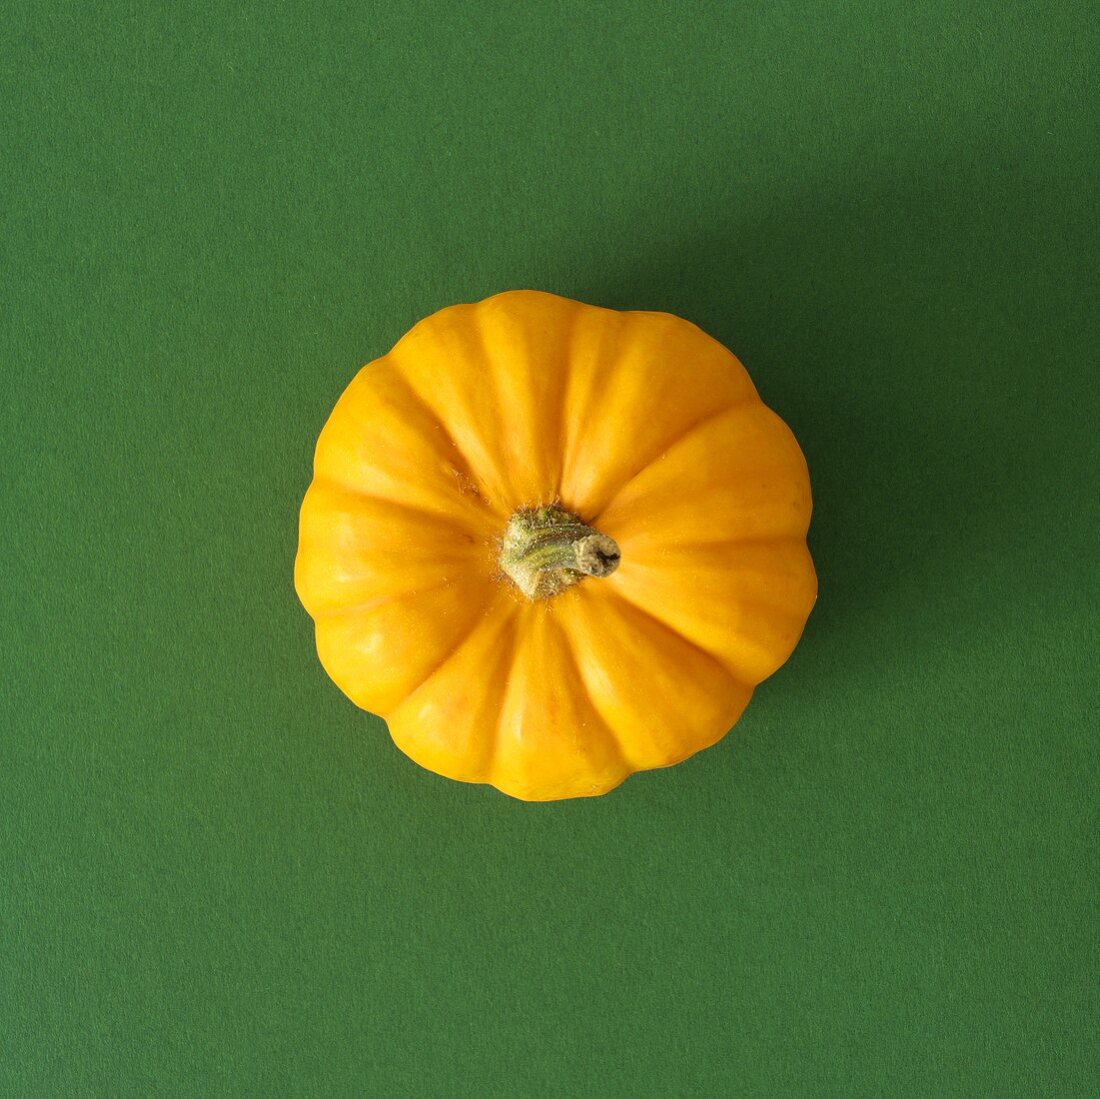 Orange pumpkin on green background (overhead view)